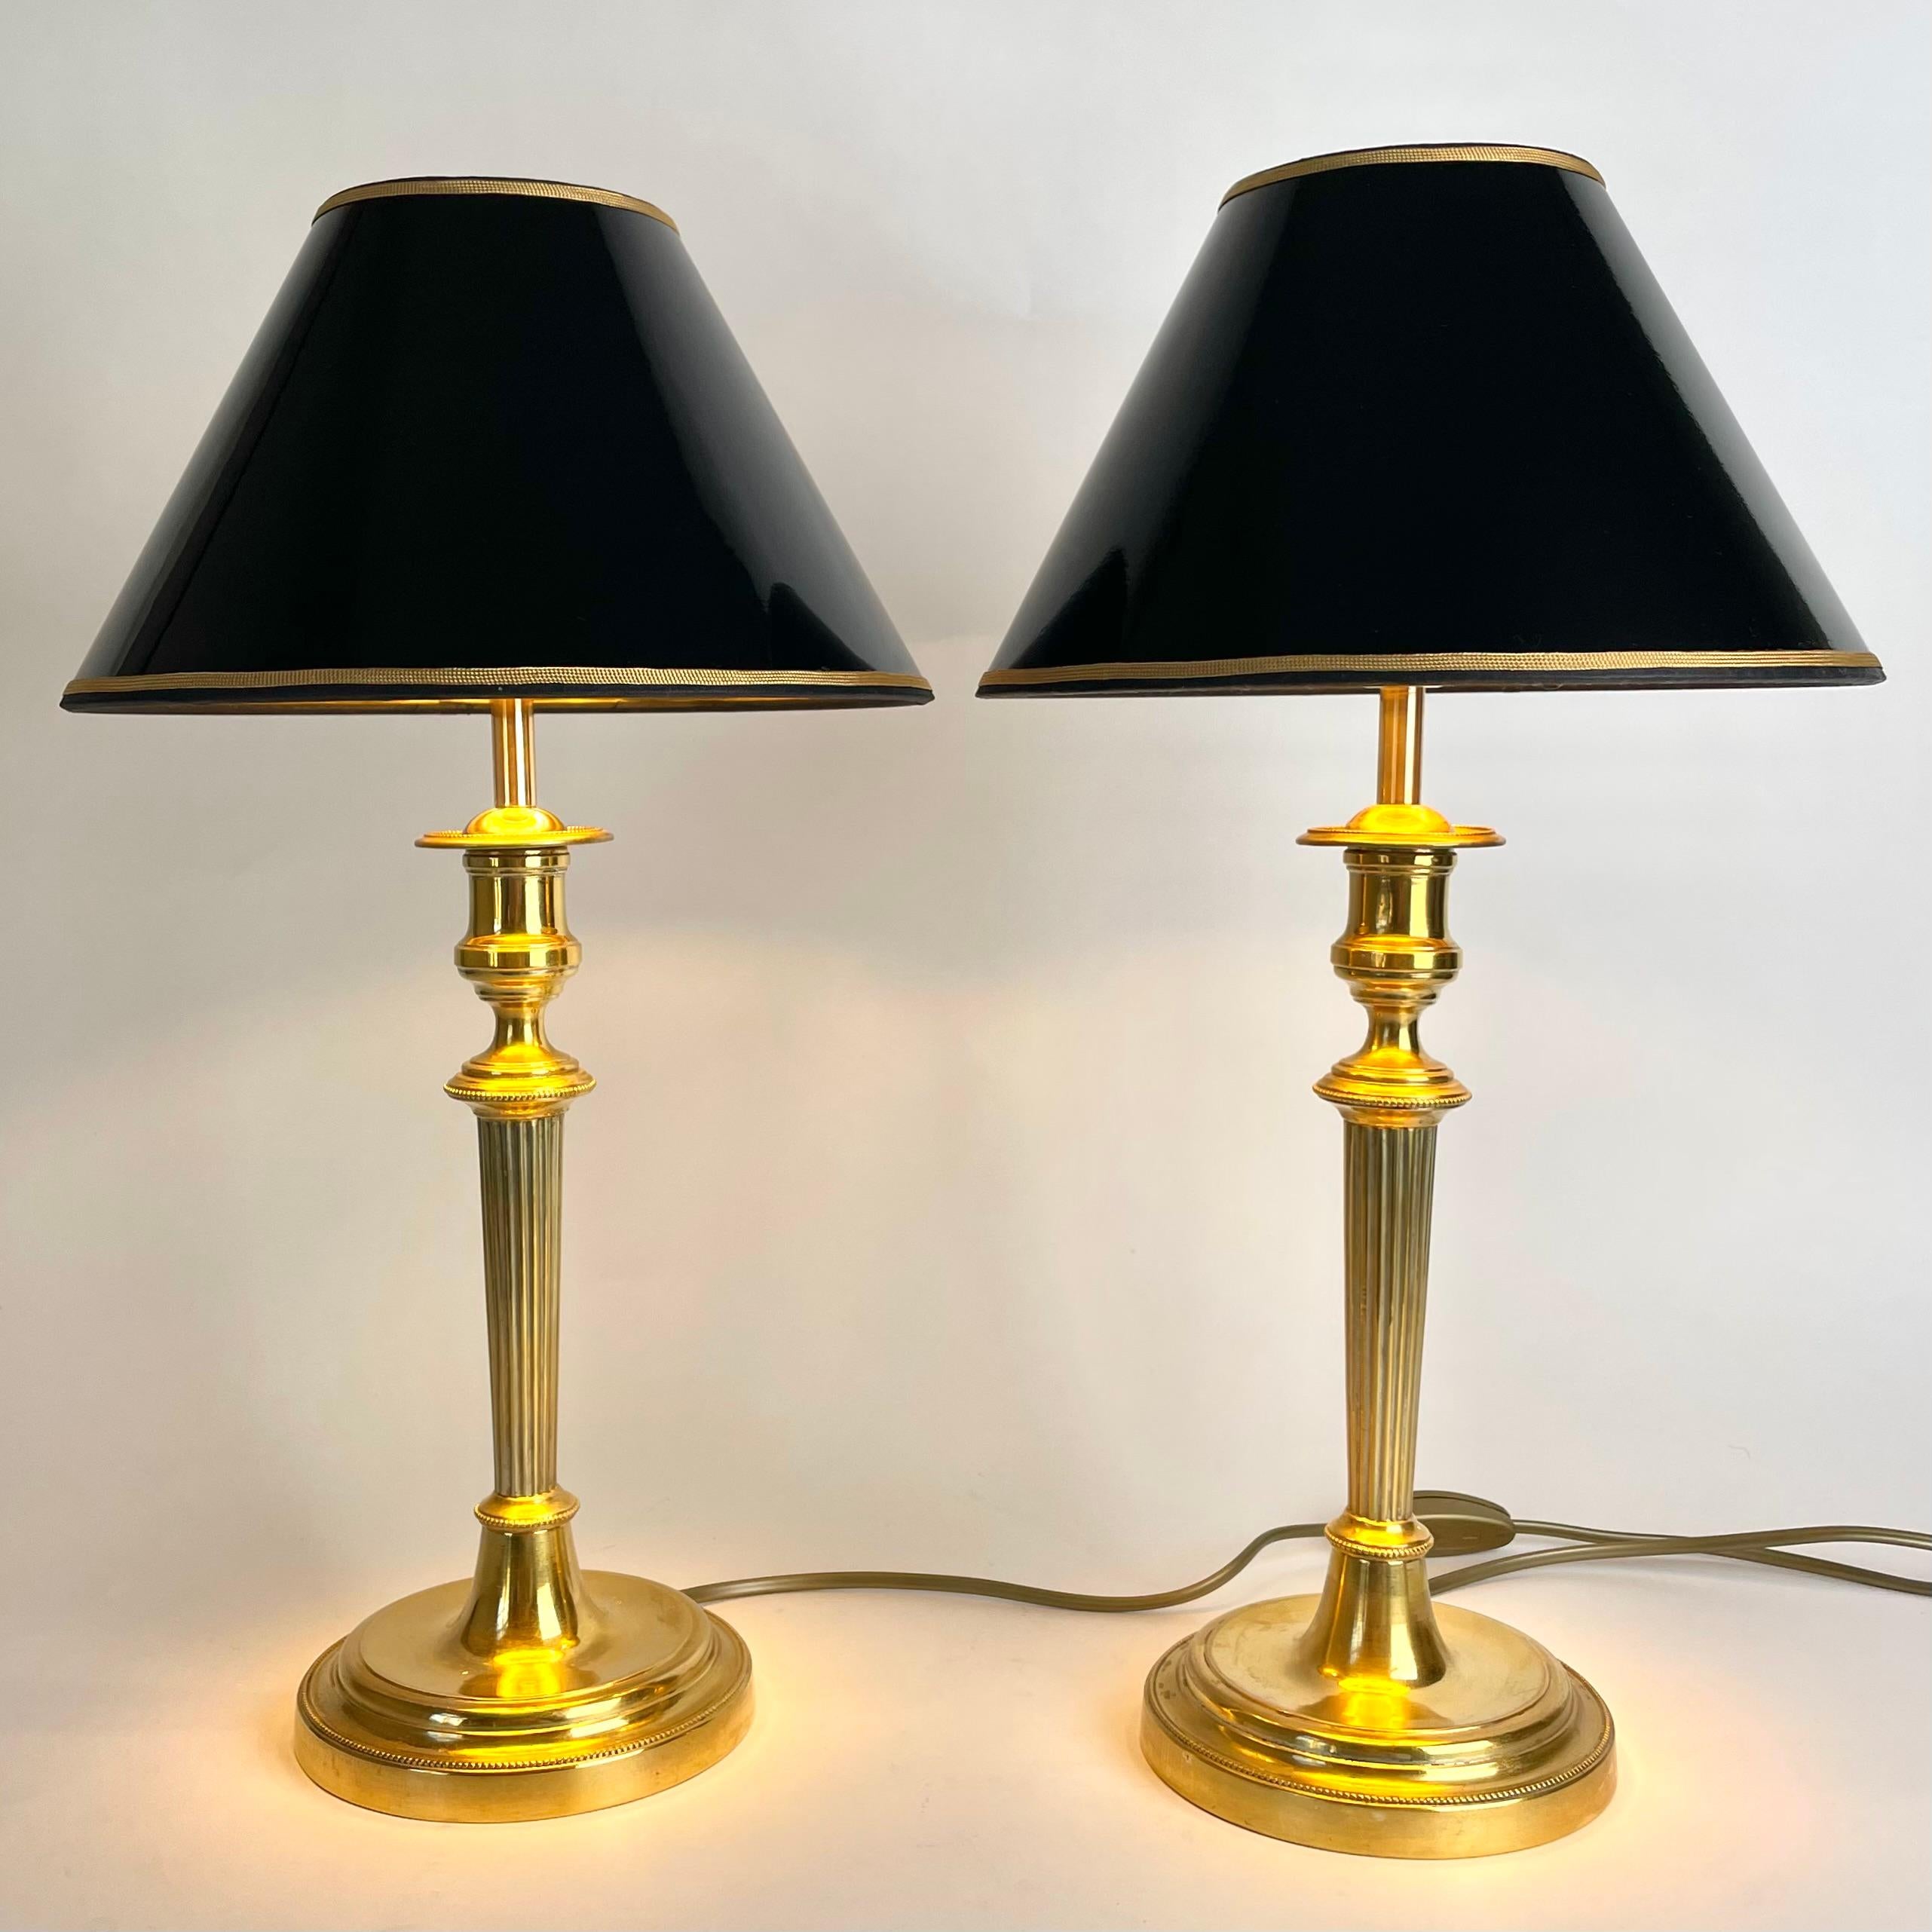 Schönes Paar Empire Tischlampen in vergoldeter Bronze. Ursprünglich ein Paar Empire-Leuchter aus den 1820er Jahren, die Anfang des 20. Jahrhunderts zu Tischlampen umfunktioniert wurden.

Neu verkabelte Elektrizität 

Neue Lampenschirme aus schwarzem